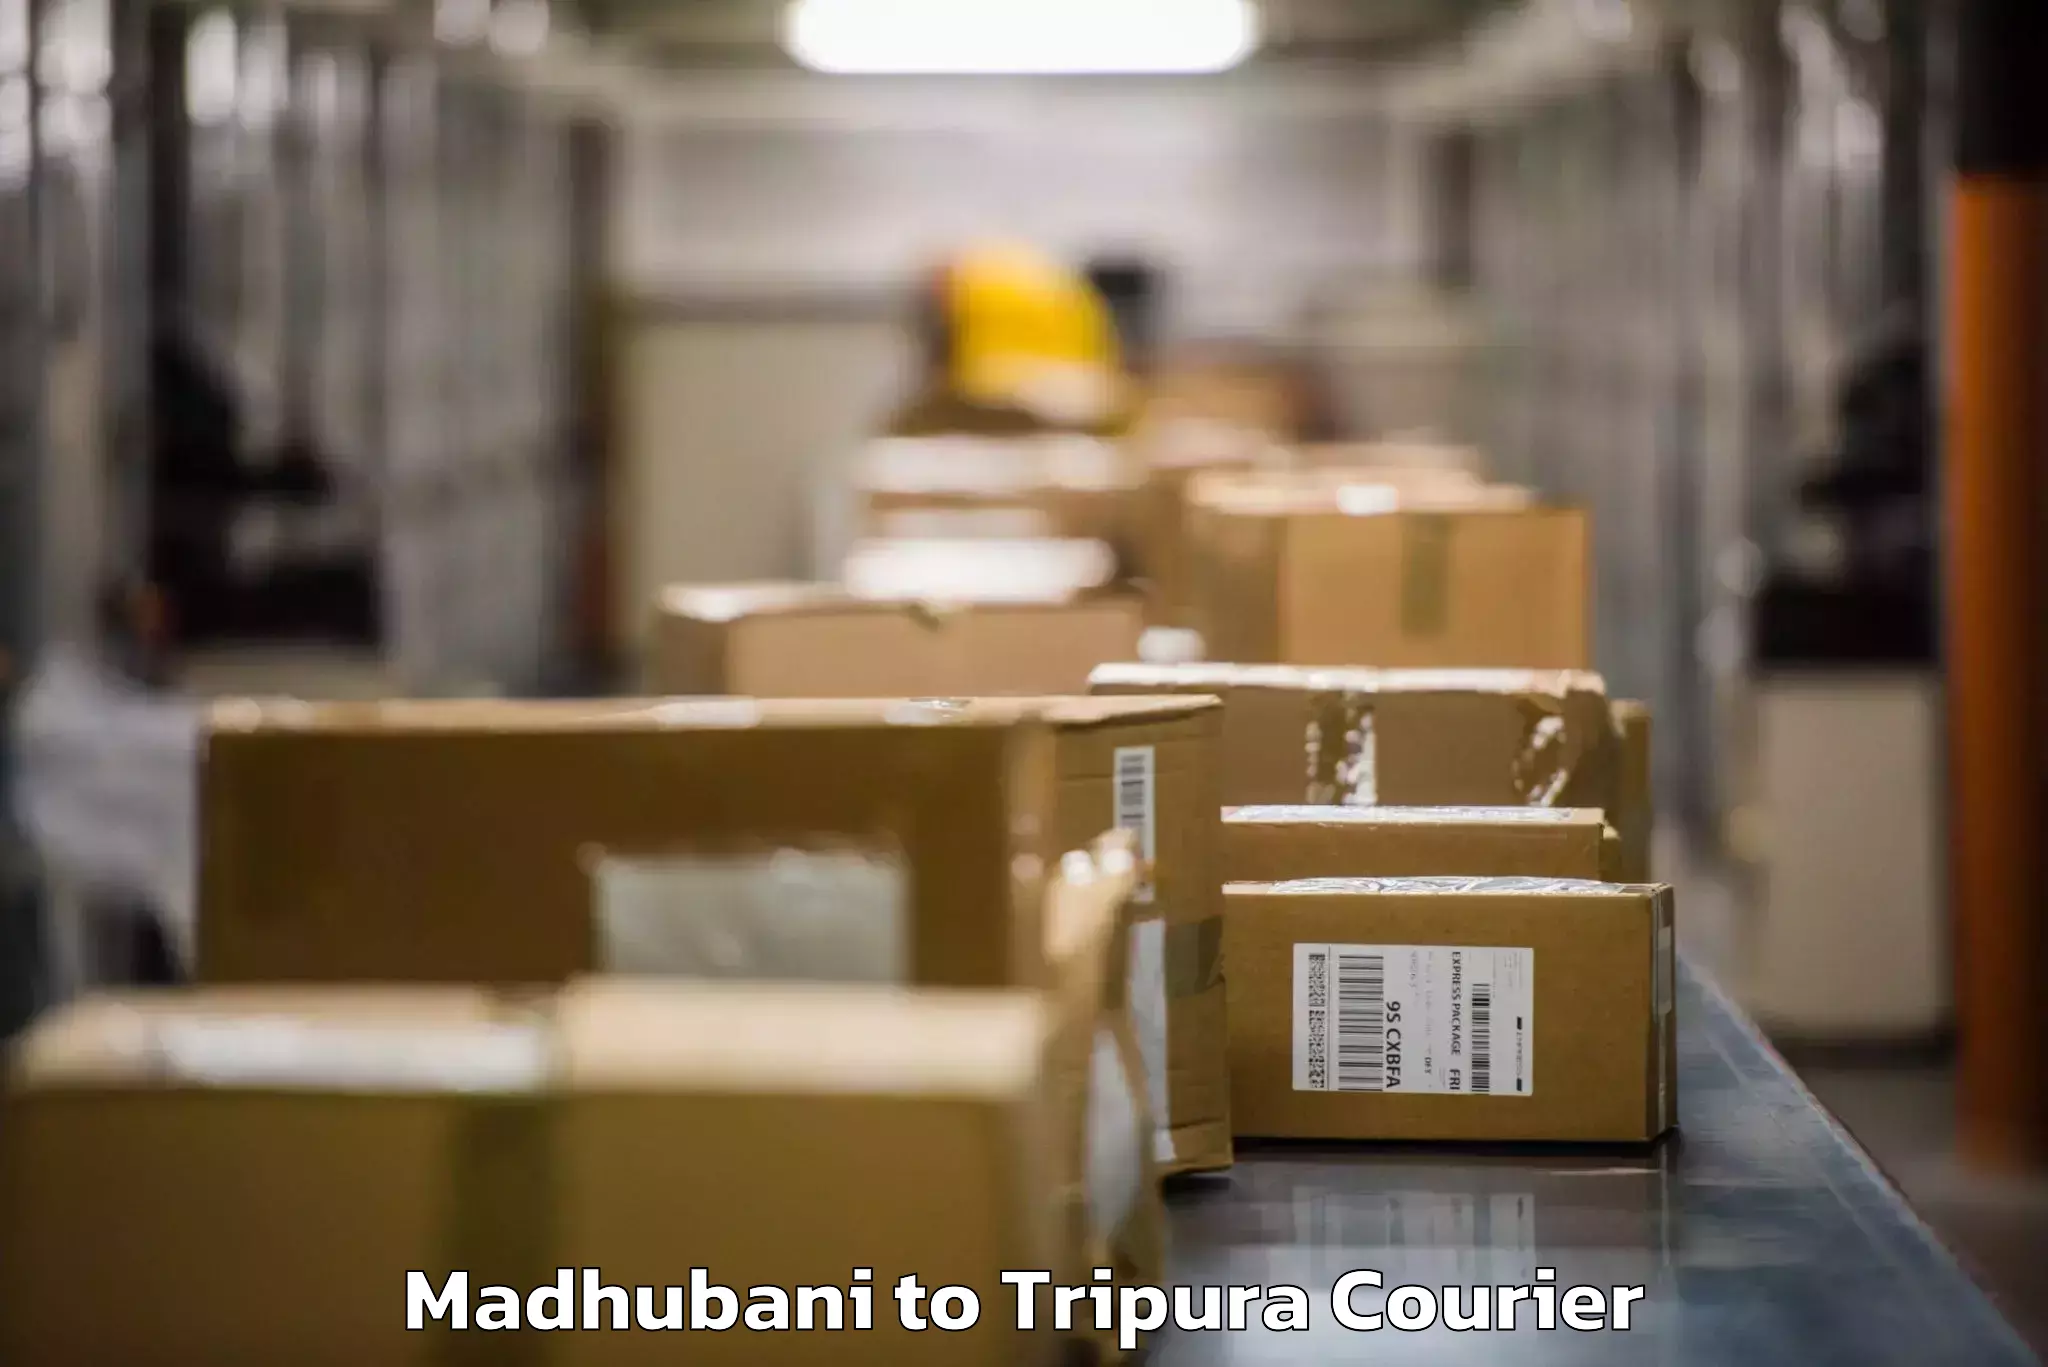 Luggage transport service Madhubani to Udaipur Tripura